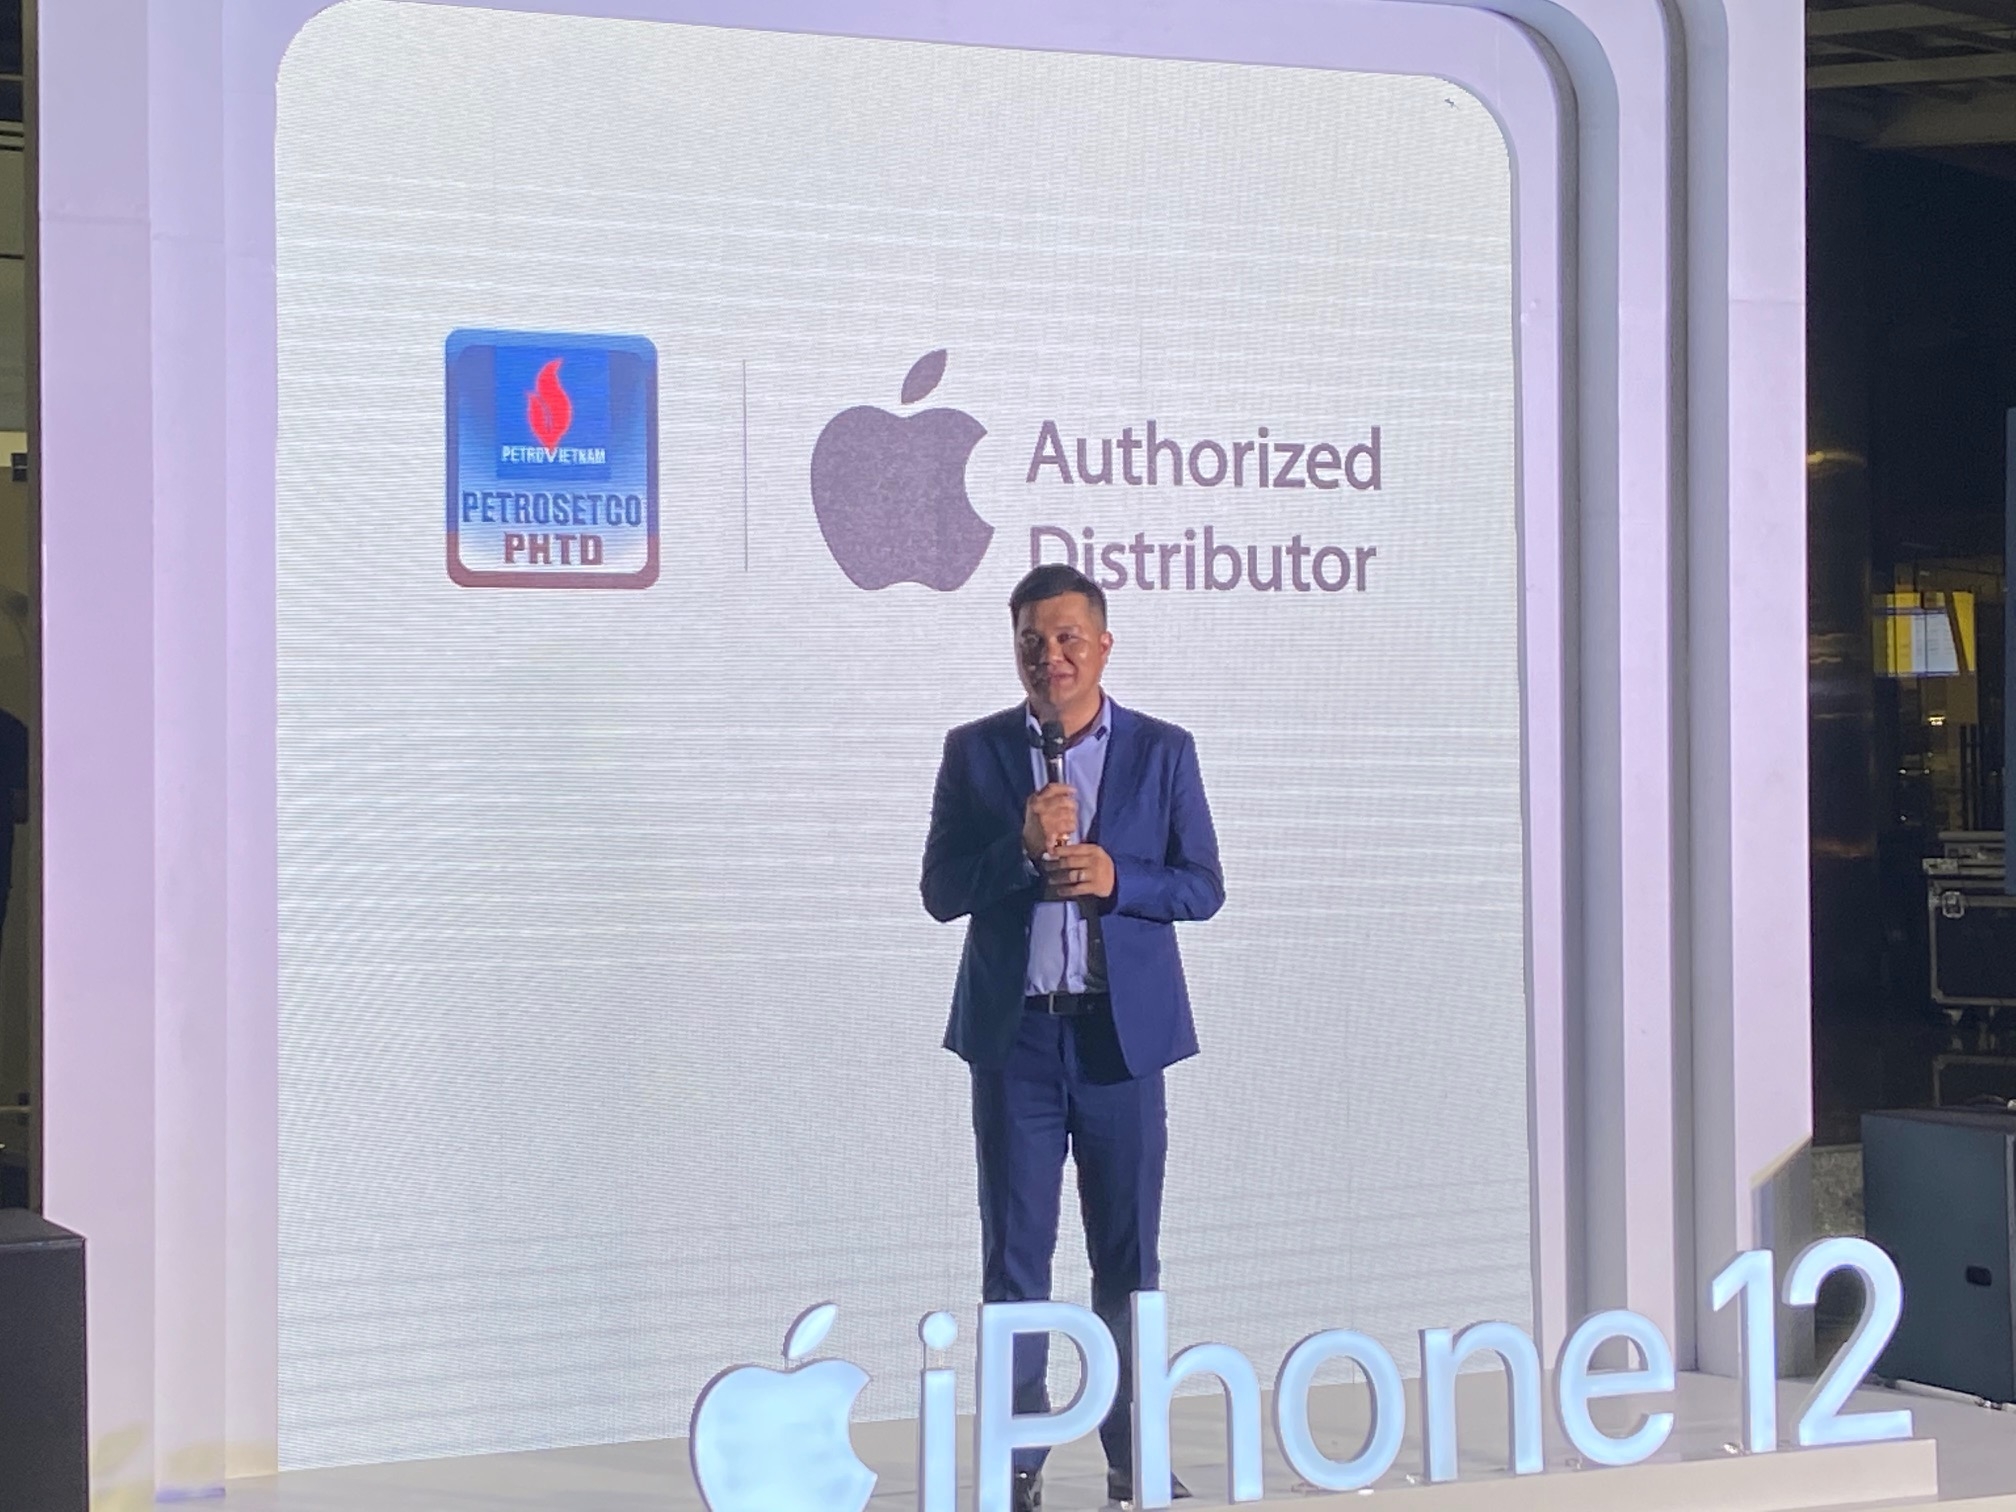 PETROSETCO: PHTD chính thức mở bán iPhone 12 series và công bố đại lý uỷ quyền chính thức của Apple tại Việt Nam